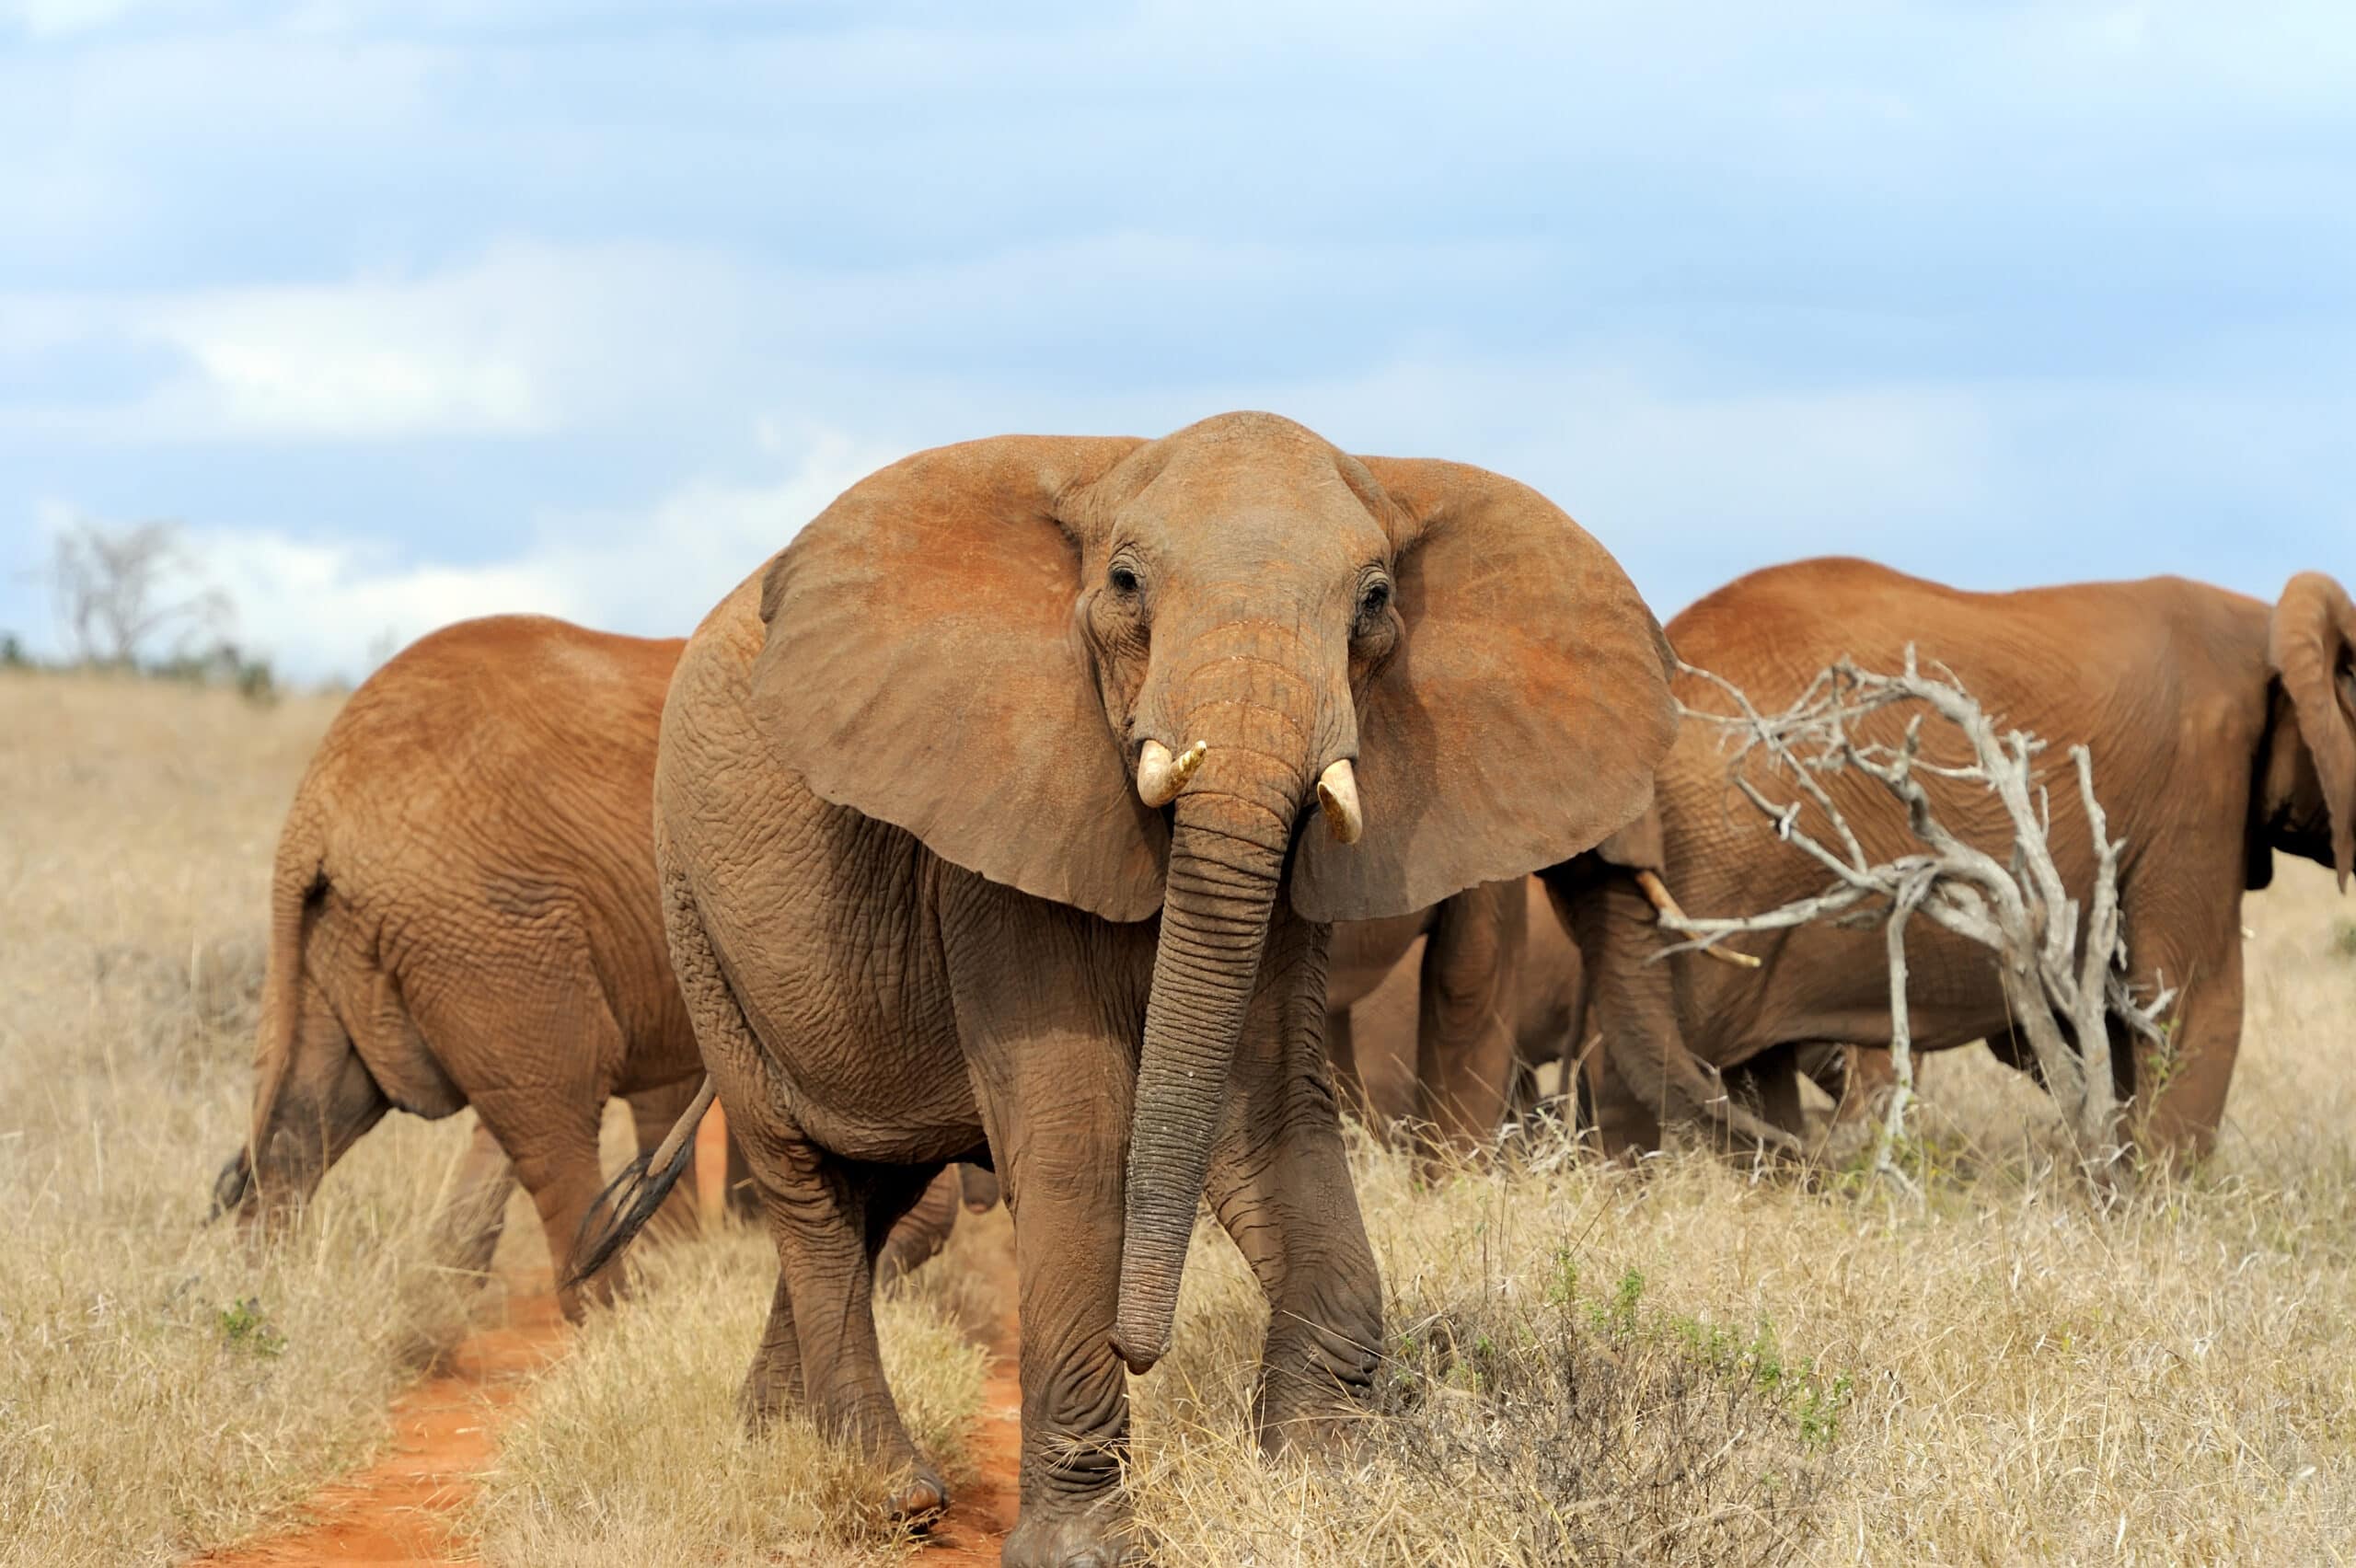 elephant in national park of kenya 2021 08 26 15 55 36 utc 1 scaled